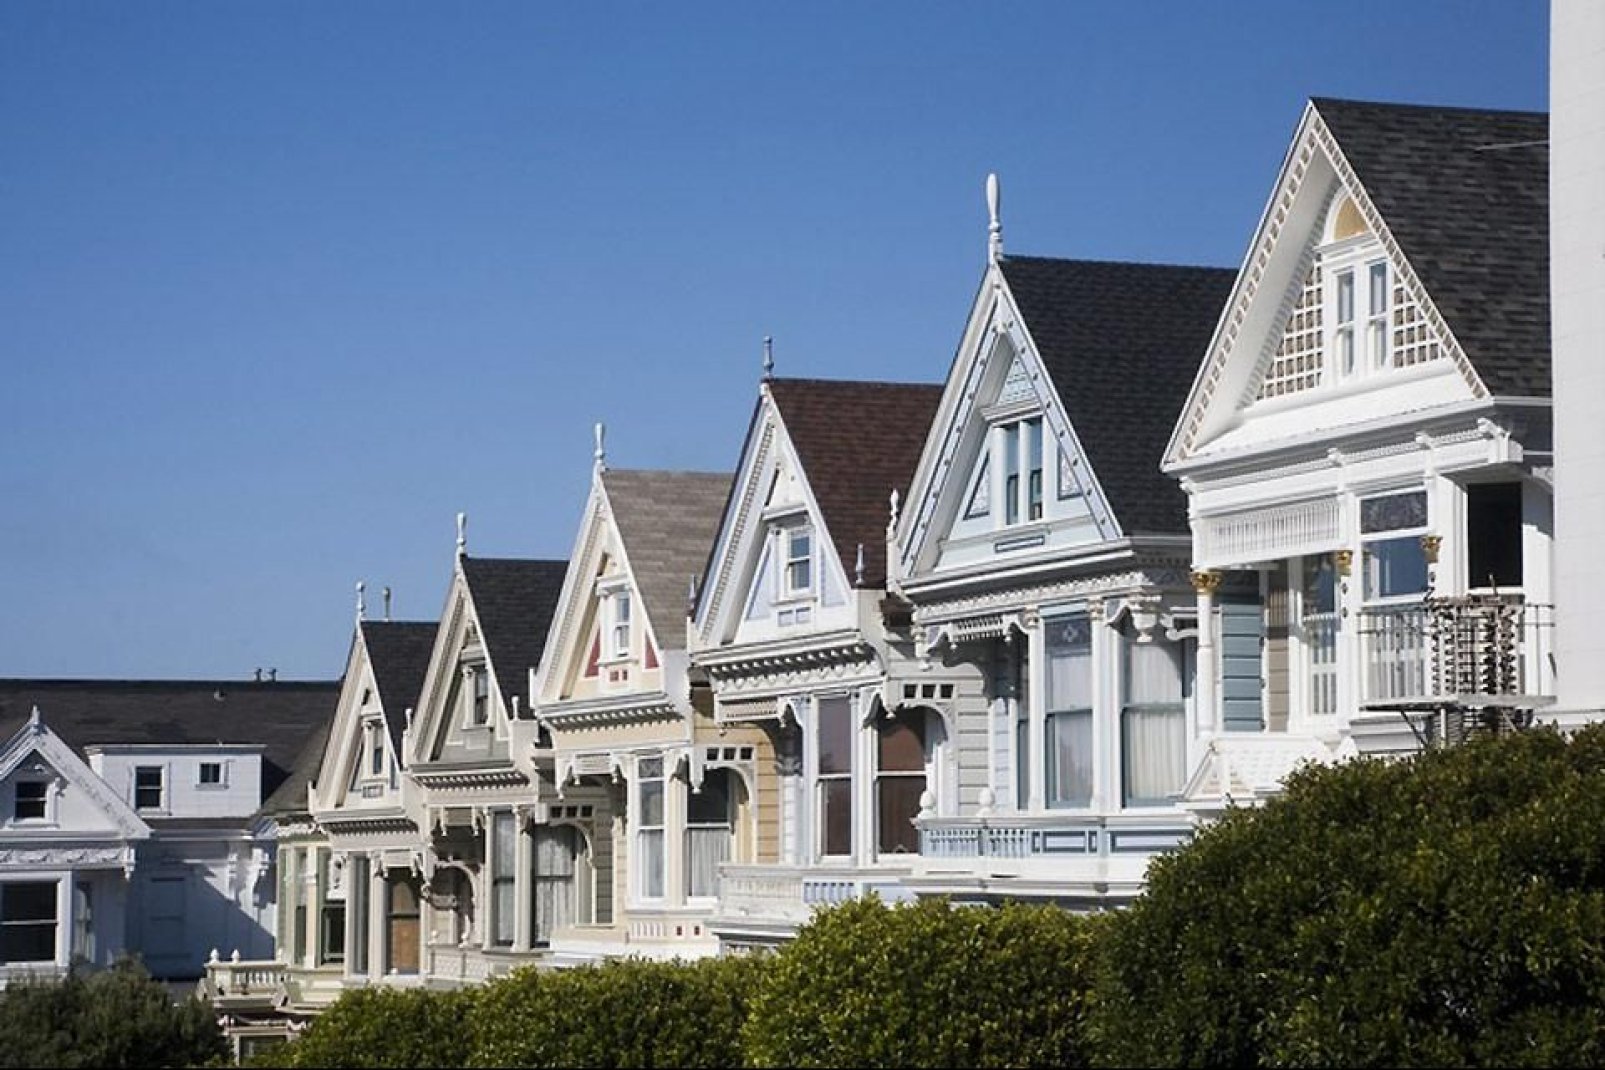 Die bunt gestrichenen Häuser stehen auf Hügeln und sind typisch für die kalifornische Stadt.